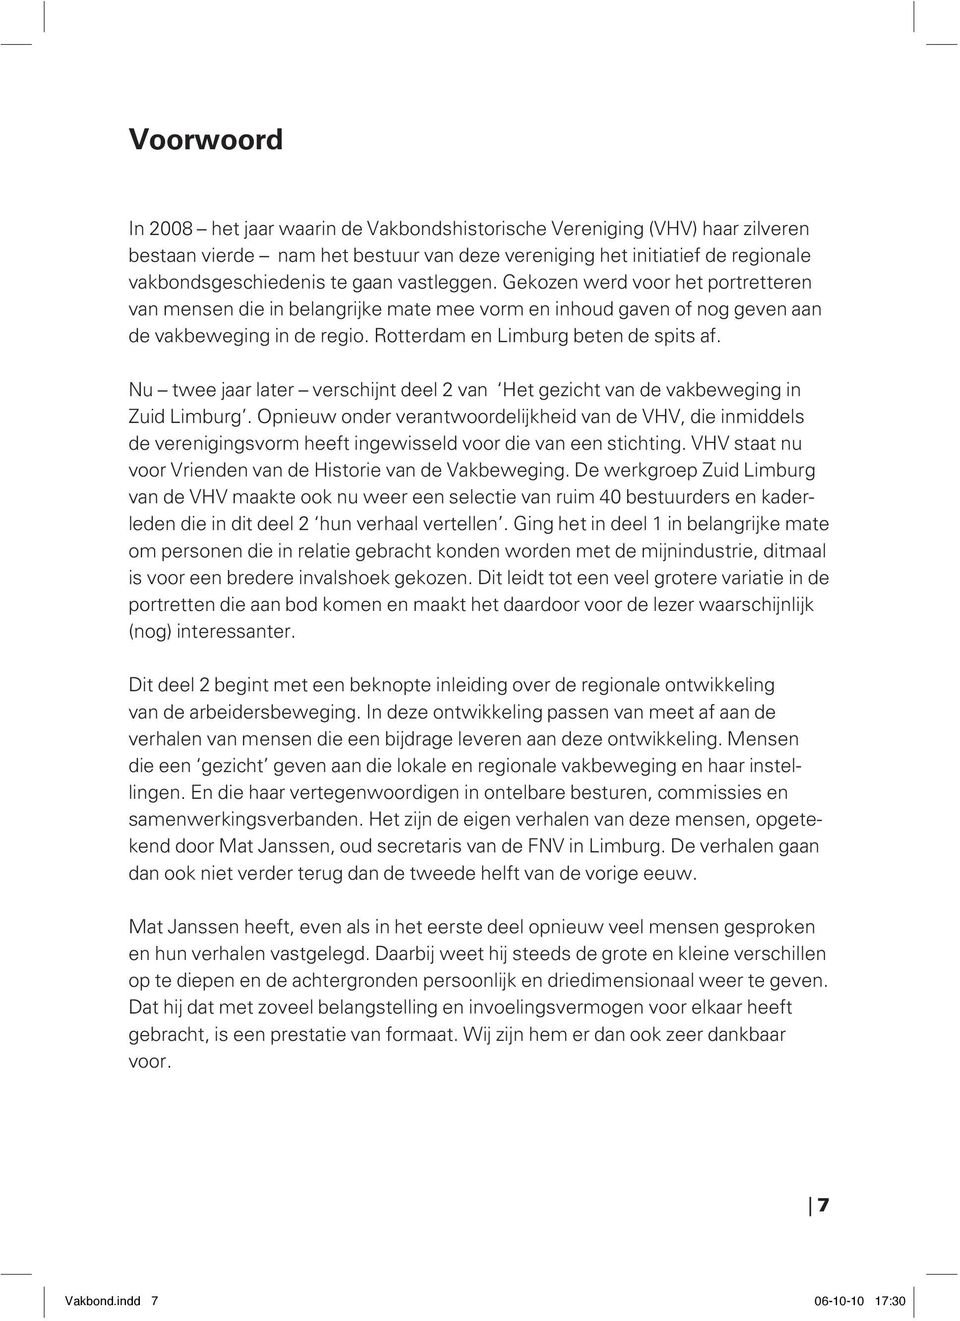 Nu twee jaar later verschijnt deel 2 van Het gezicht van de vakbeweging in Zuid Limburg.